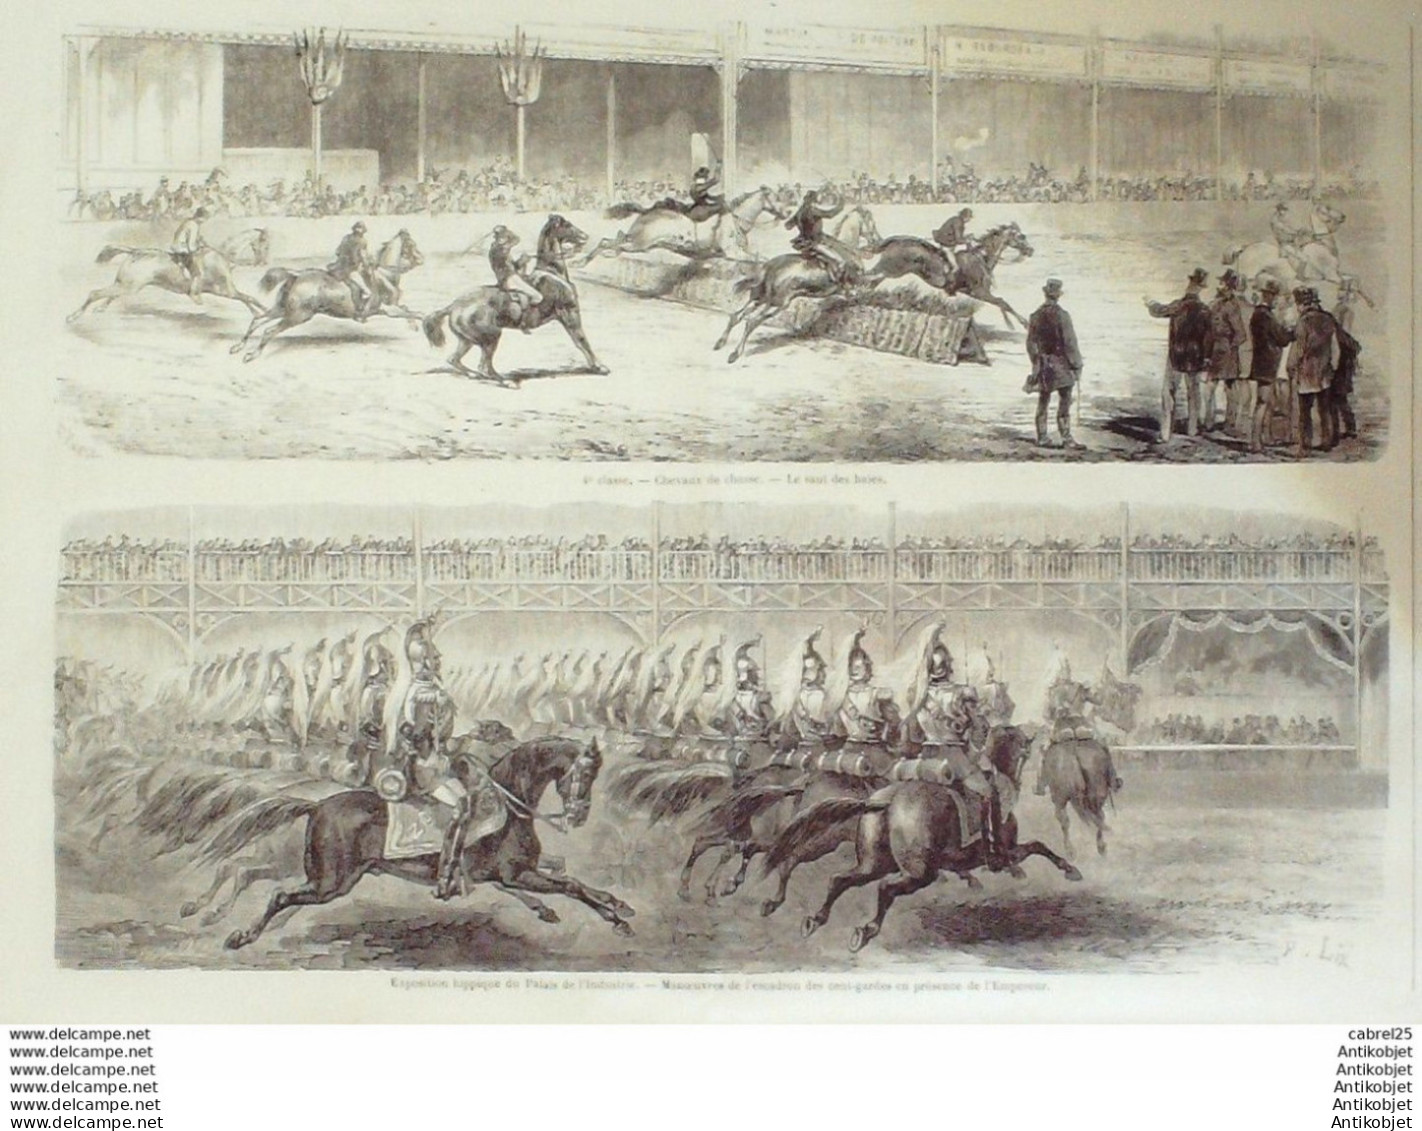 Le Monde Illustré 1870 N°679 Turquie Smyrne Bagne Du Djezair Khan Egypte Caire Cuba La Havane - 1850 - 1899